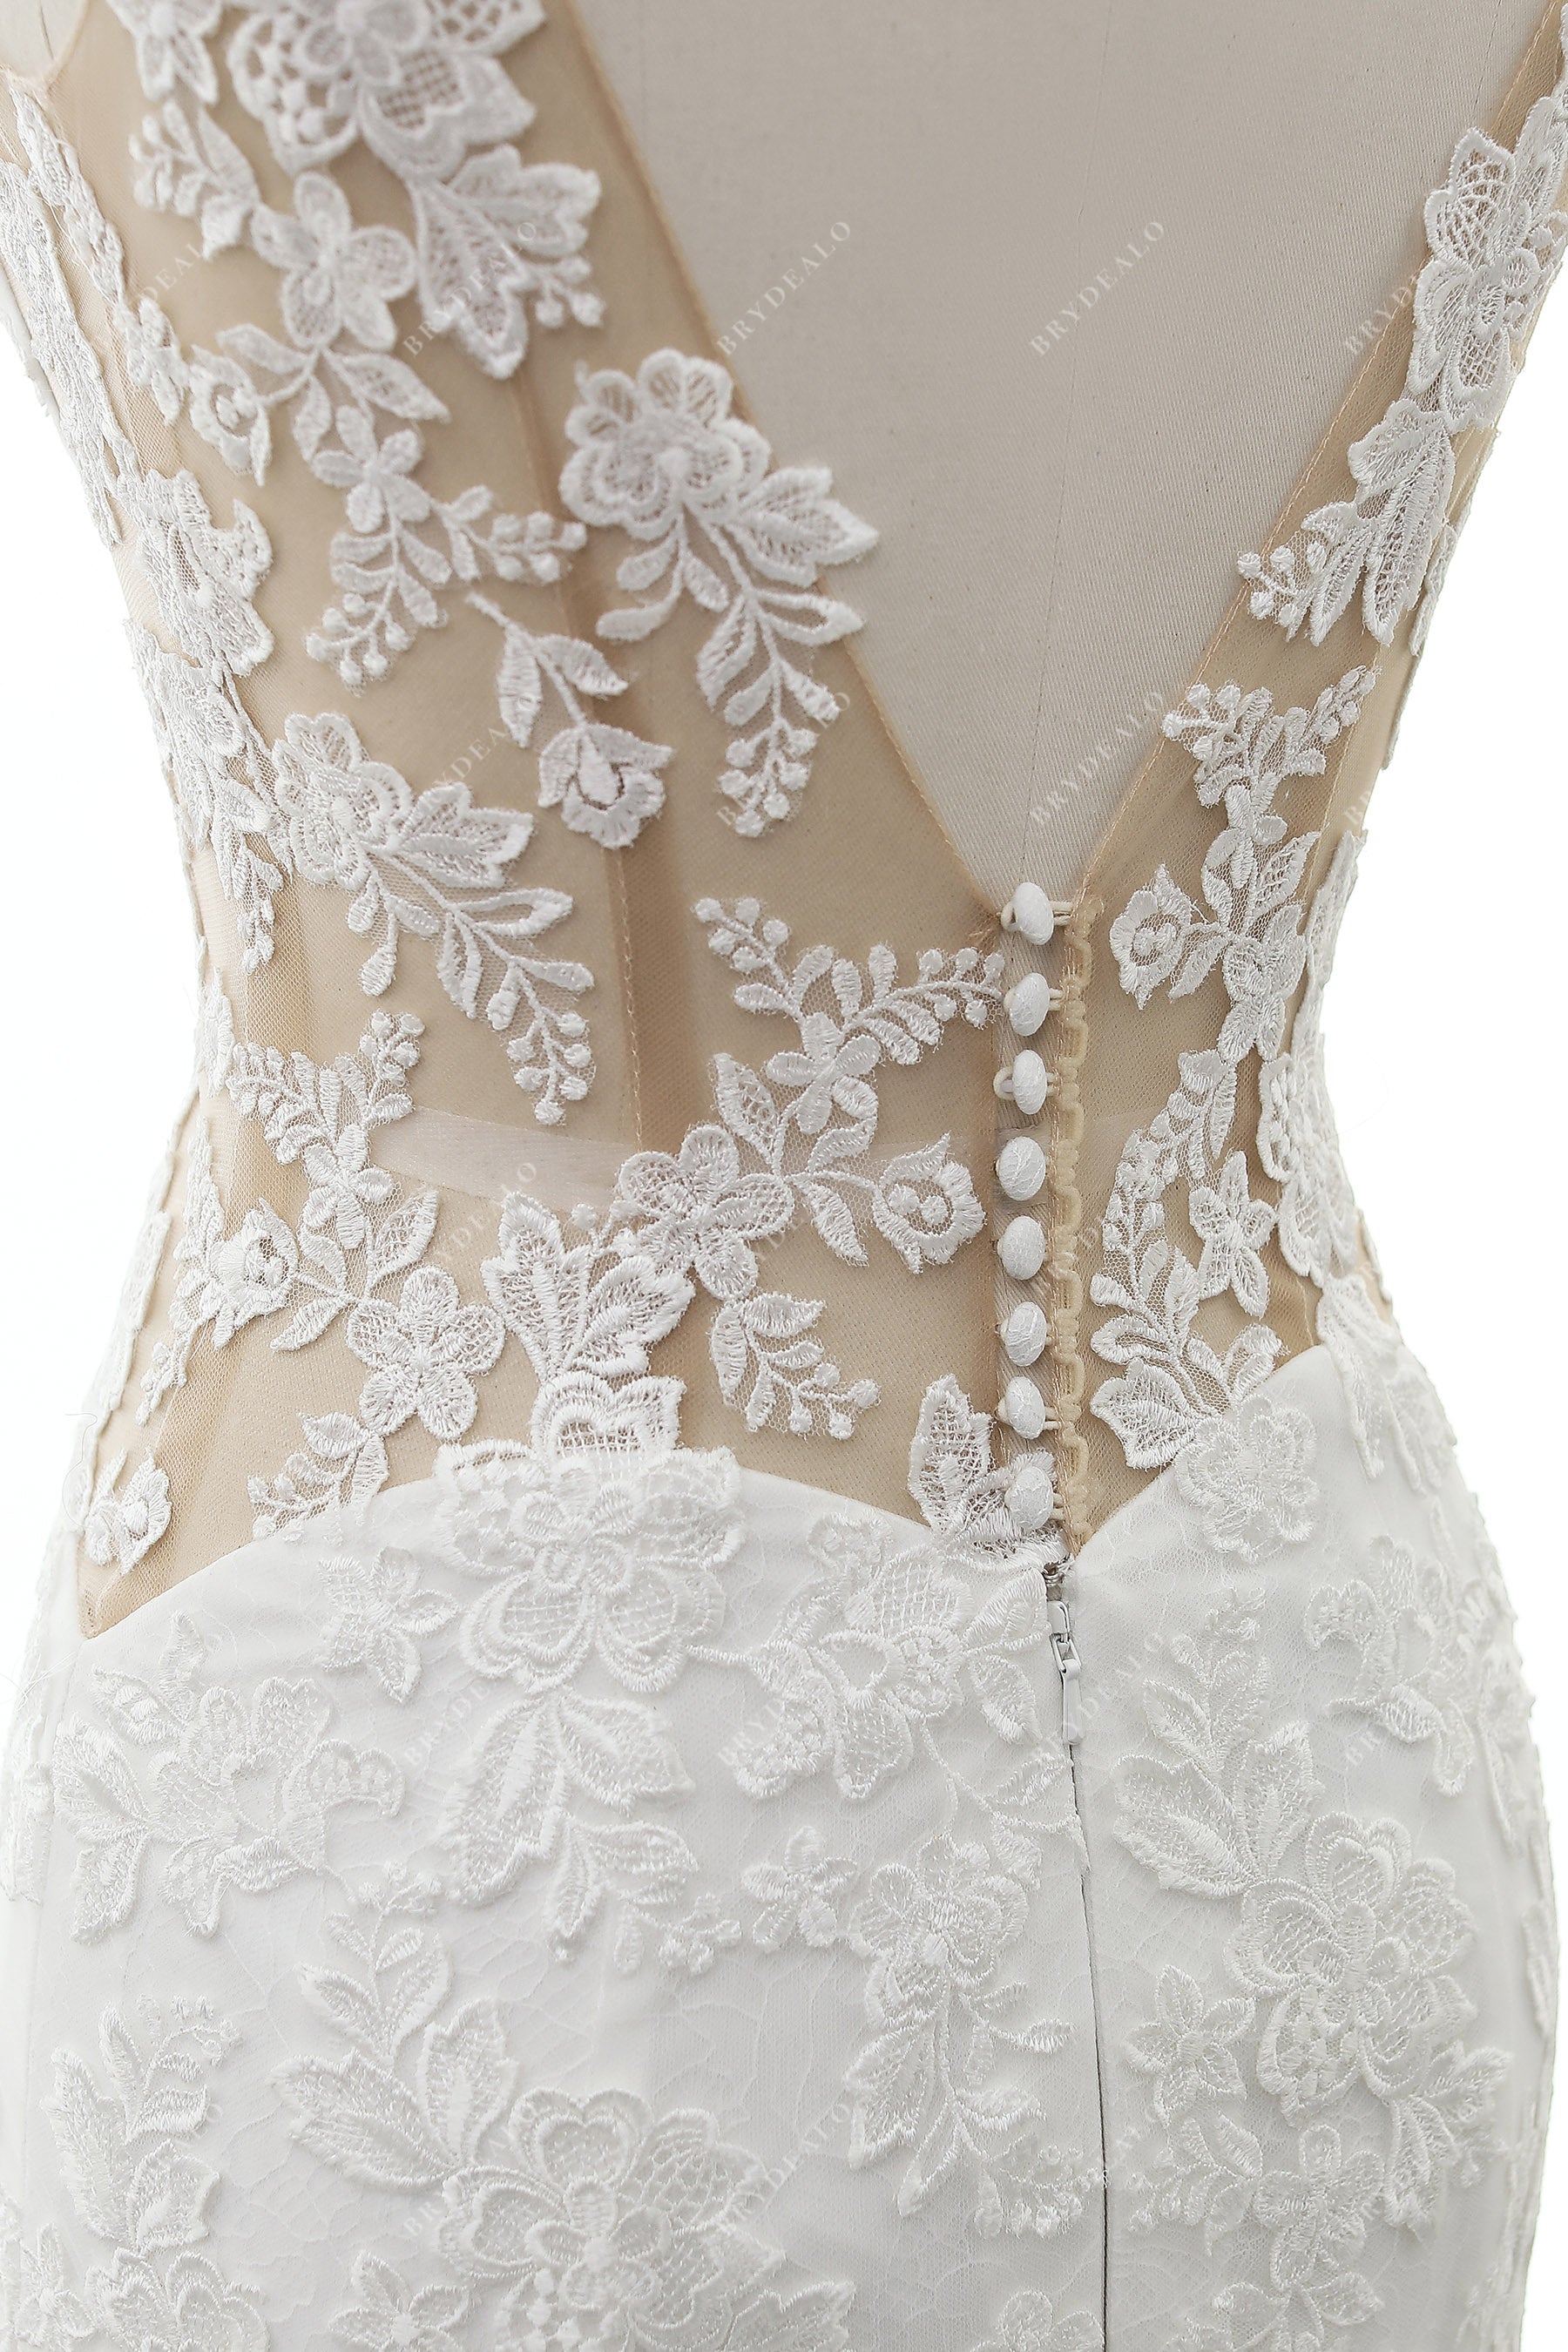 designed cutout lace bridal gown